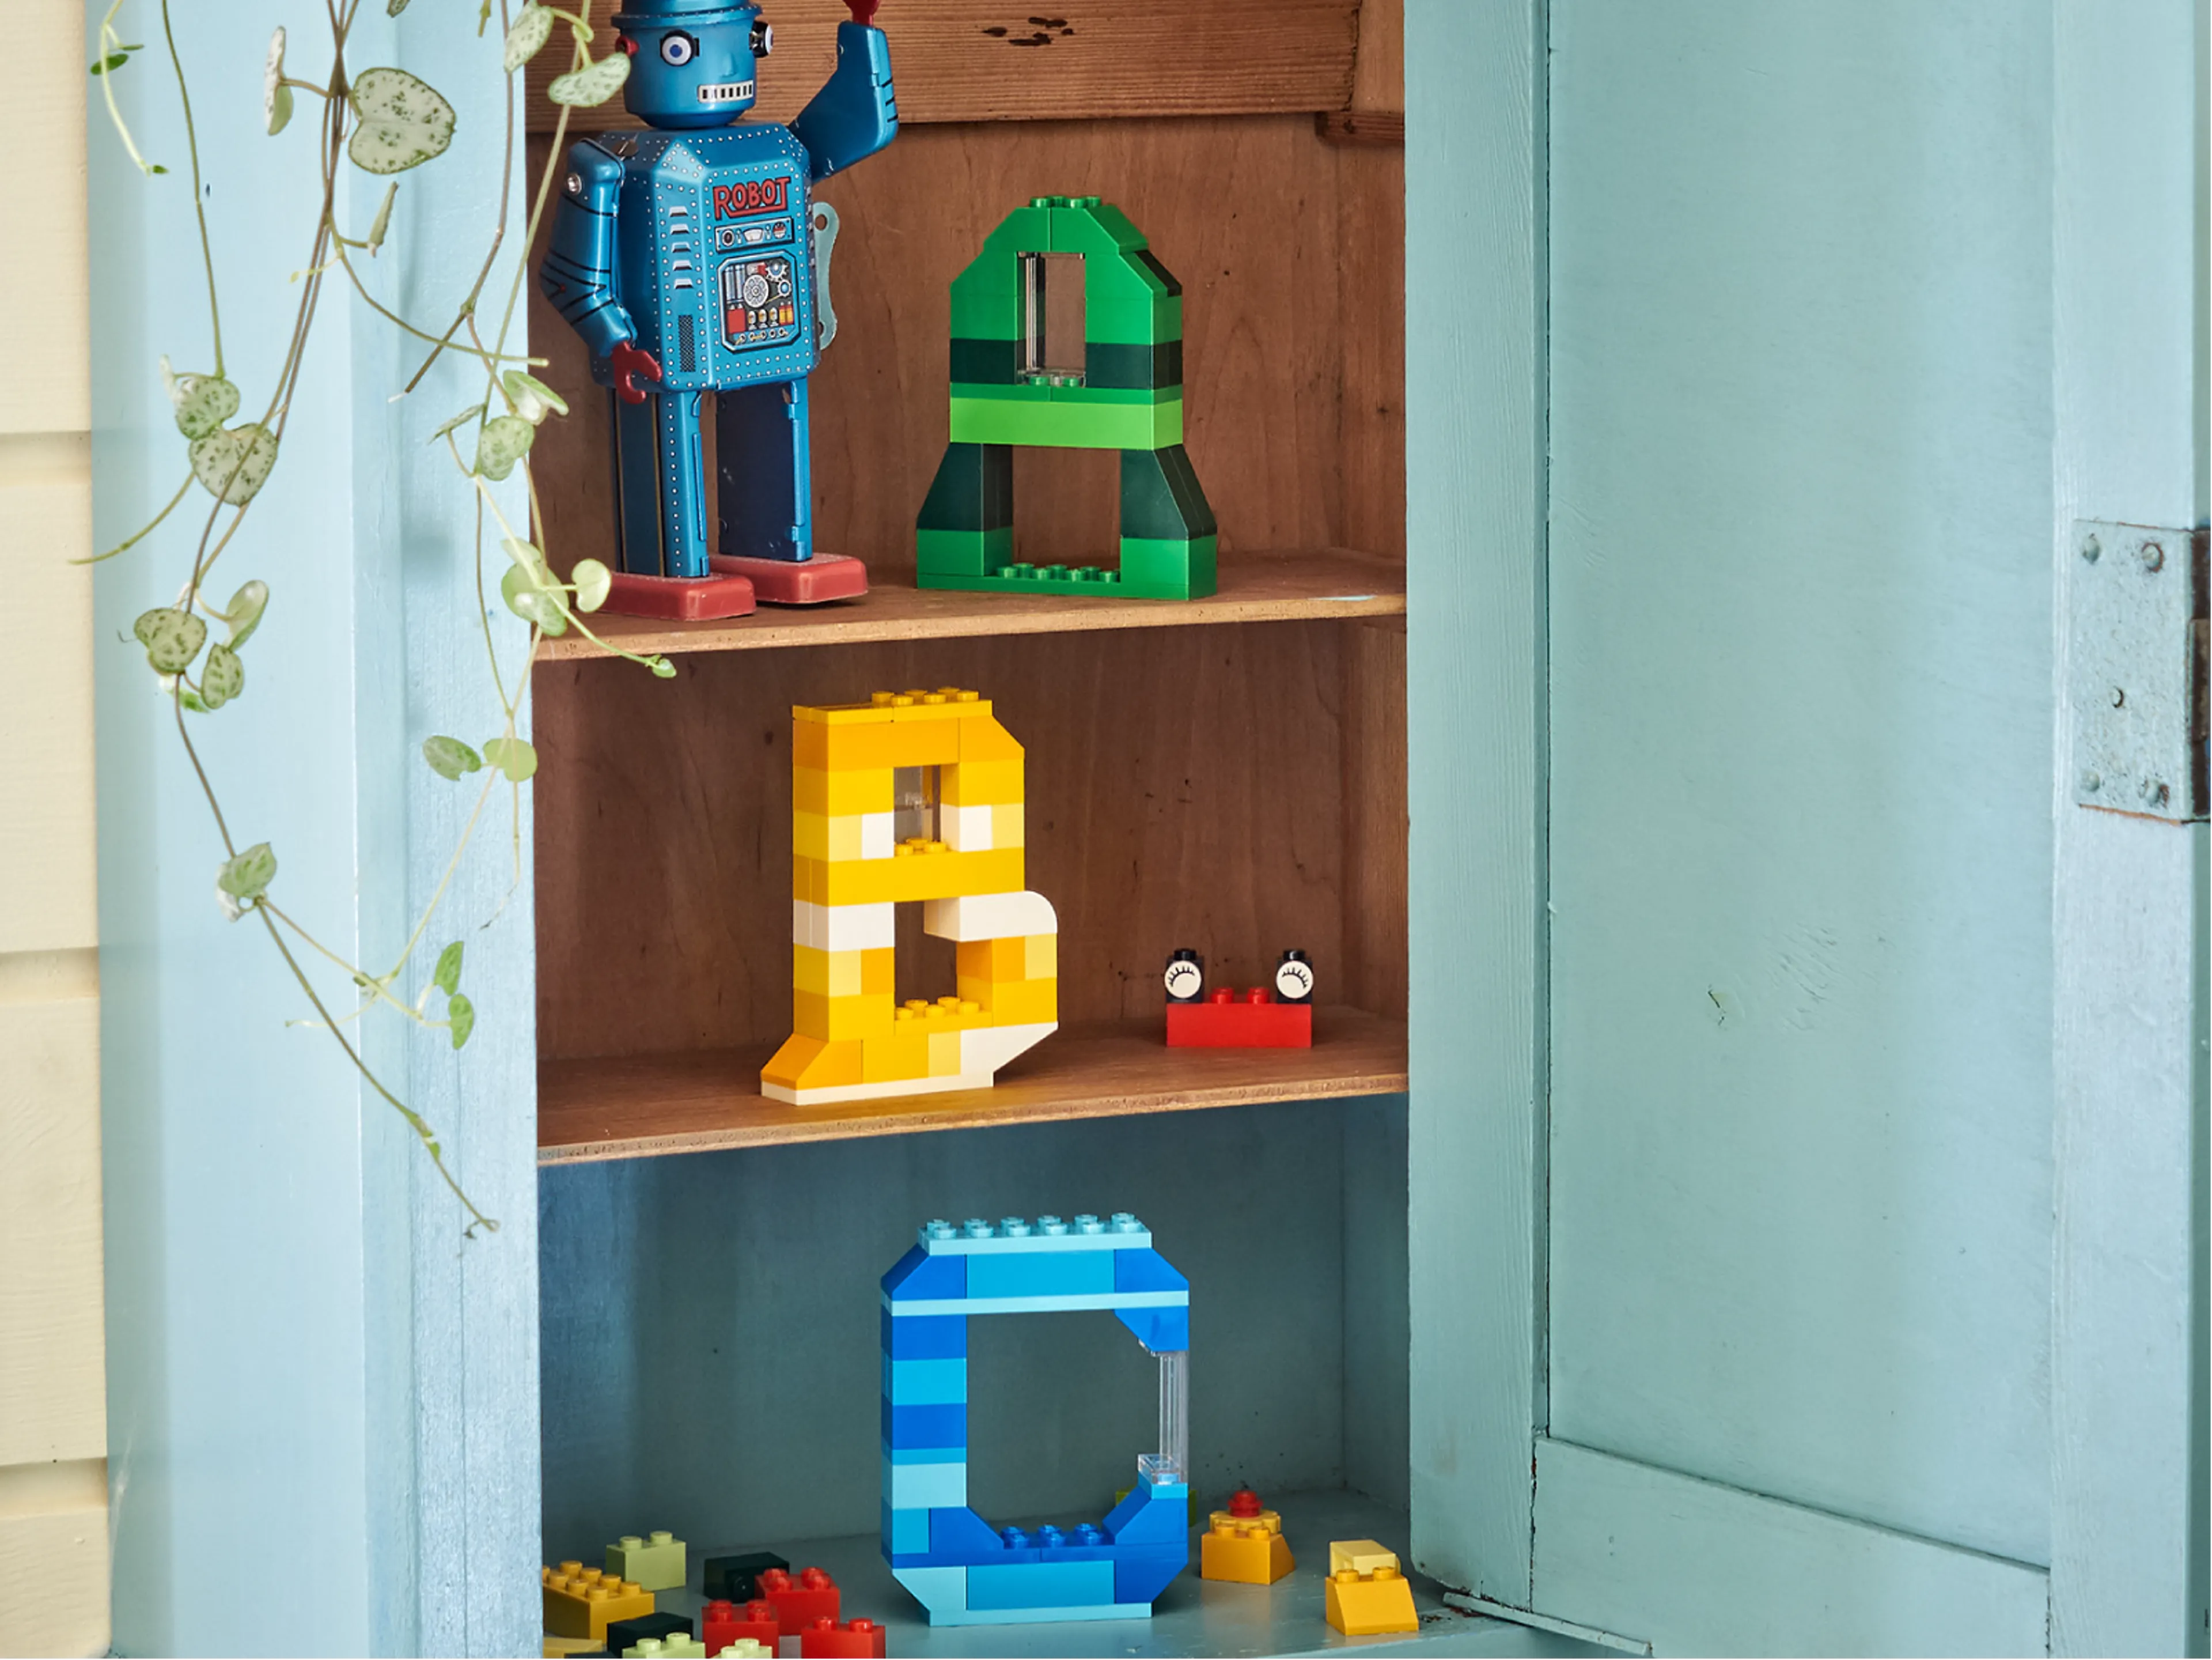 LEGO Bricks spelling A,B,C